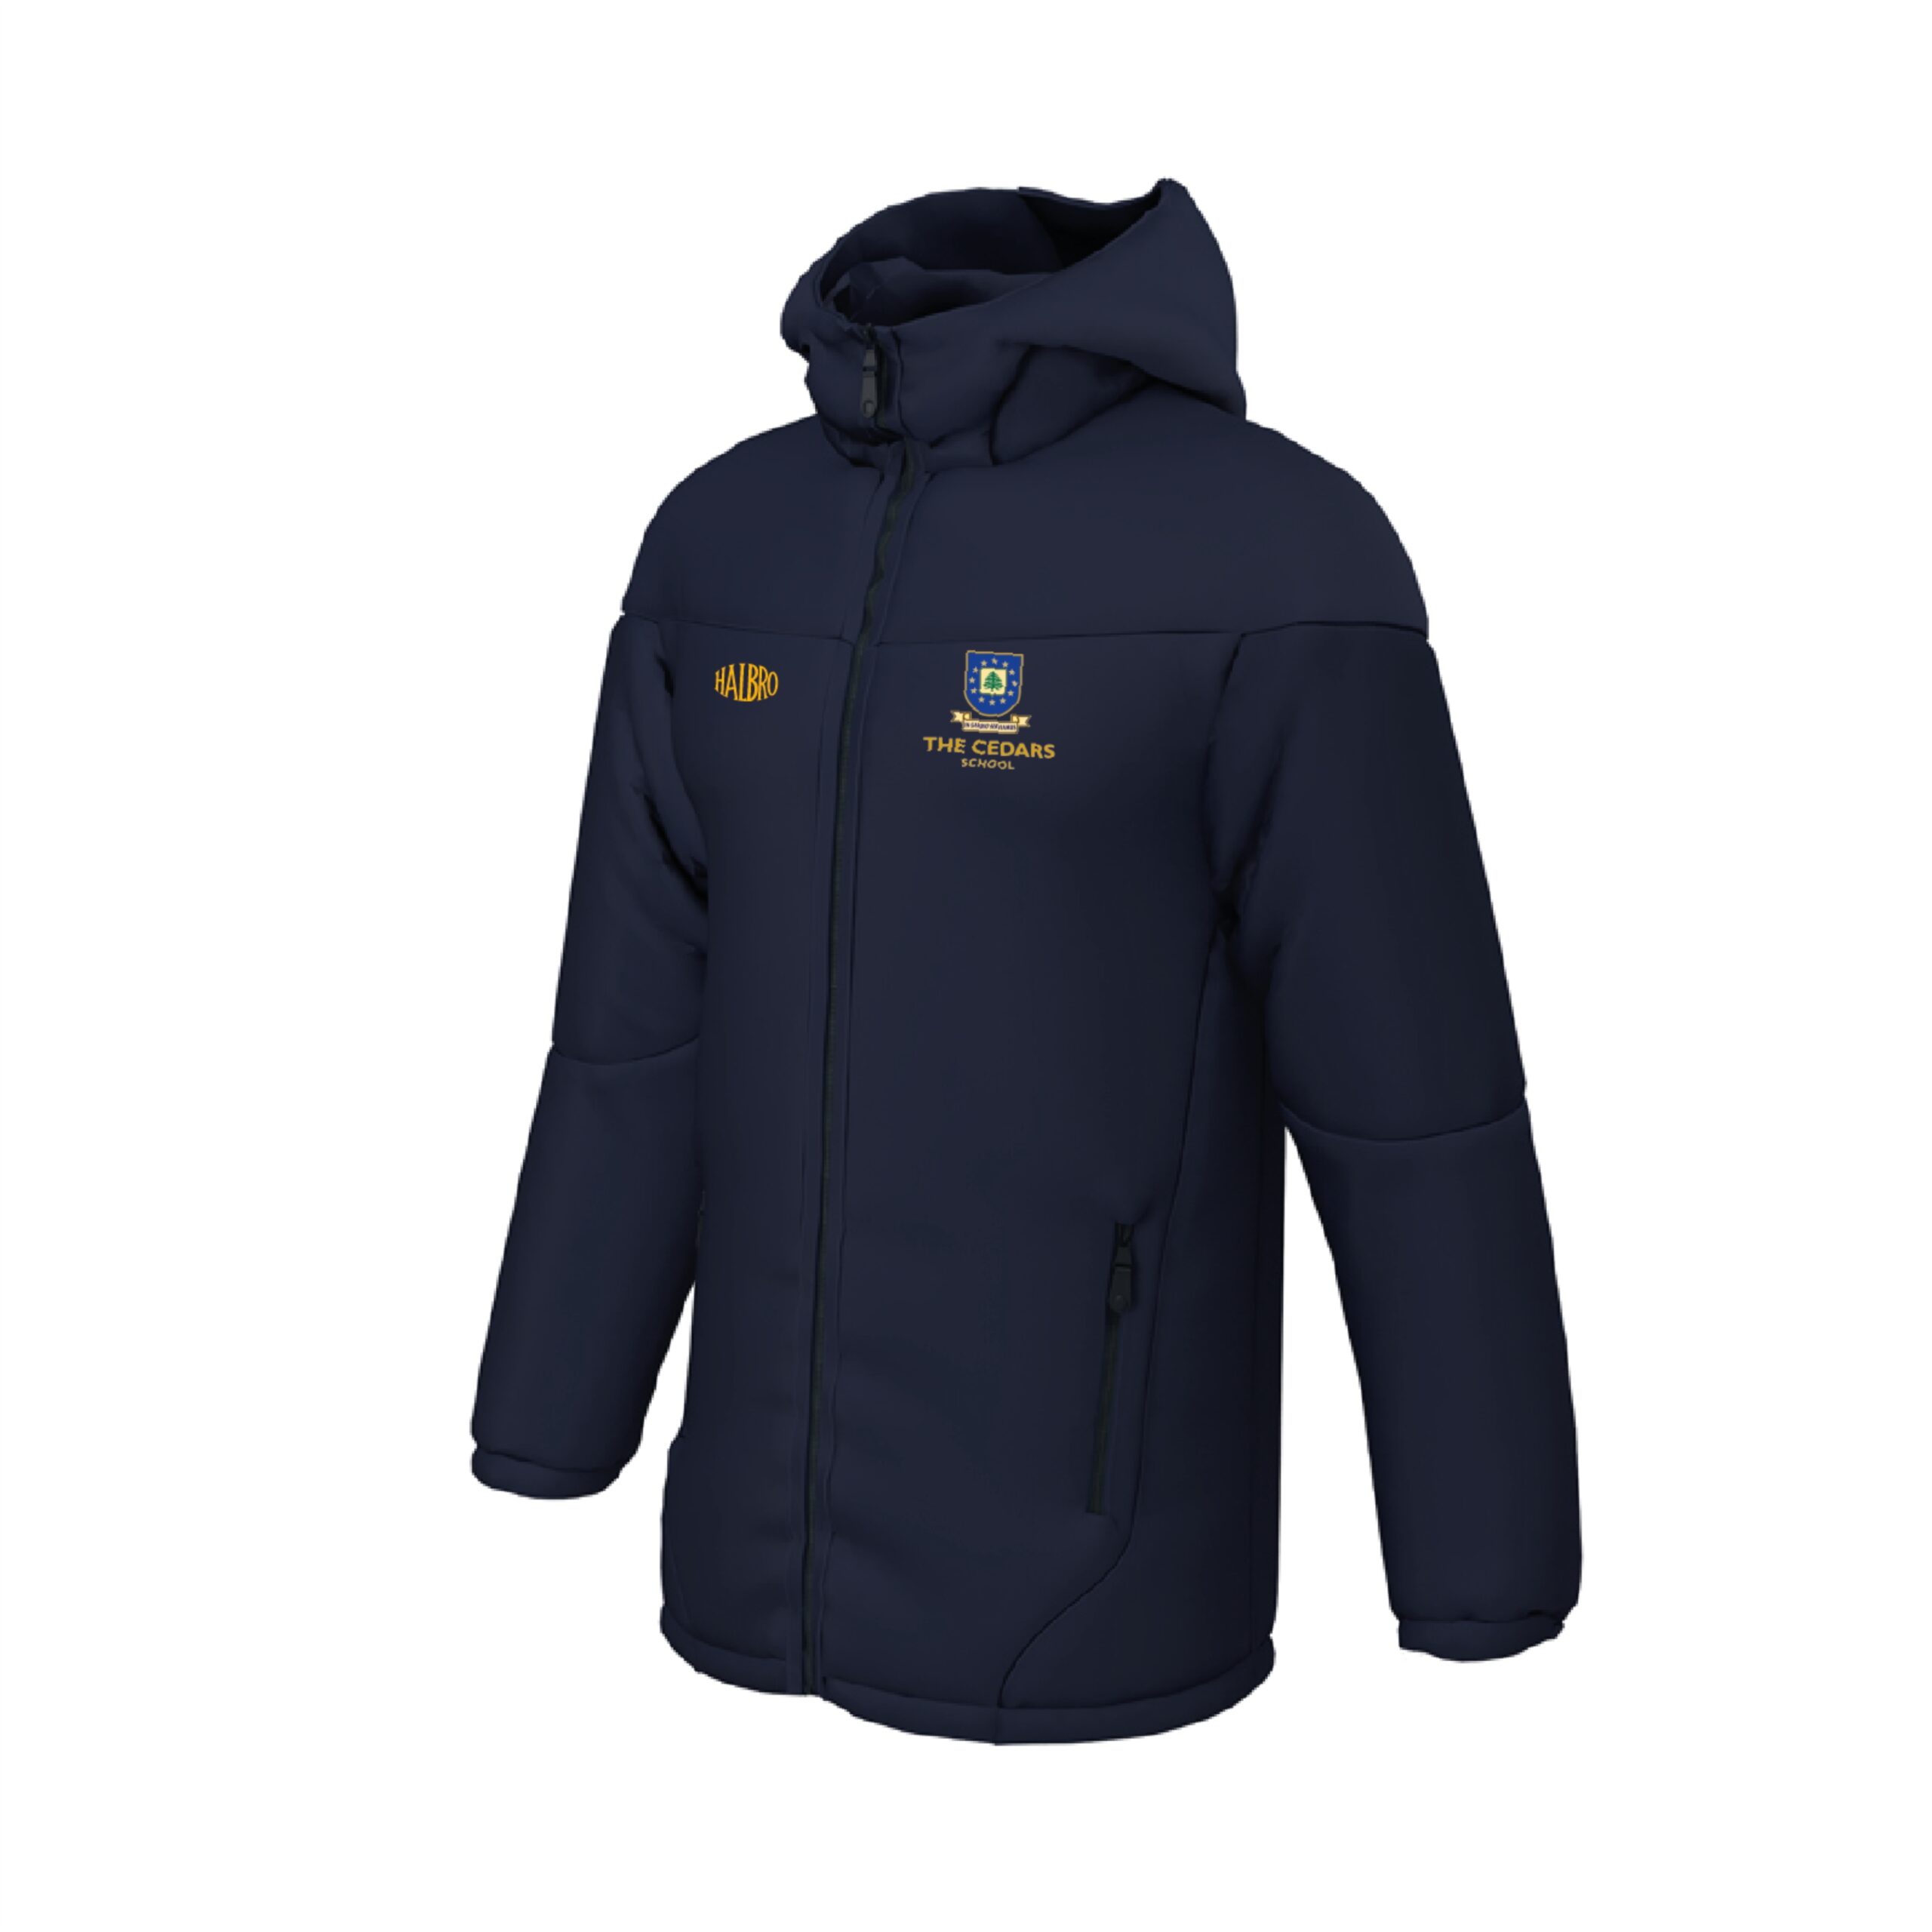 The Cedars School Thermal Jacket - Halbro Sportswear Limited